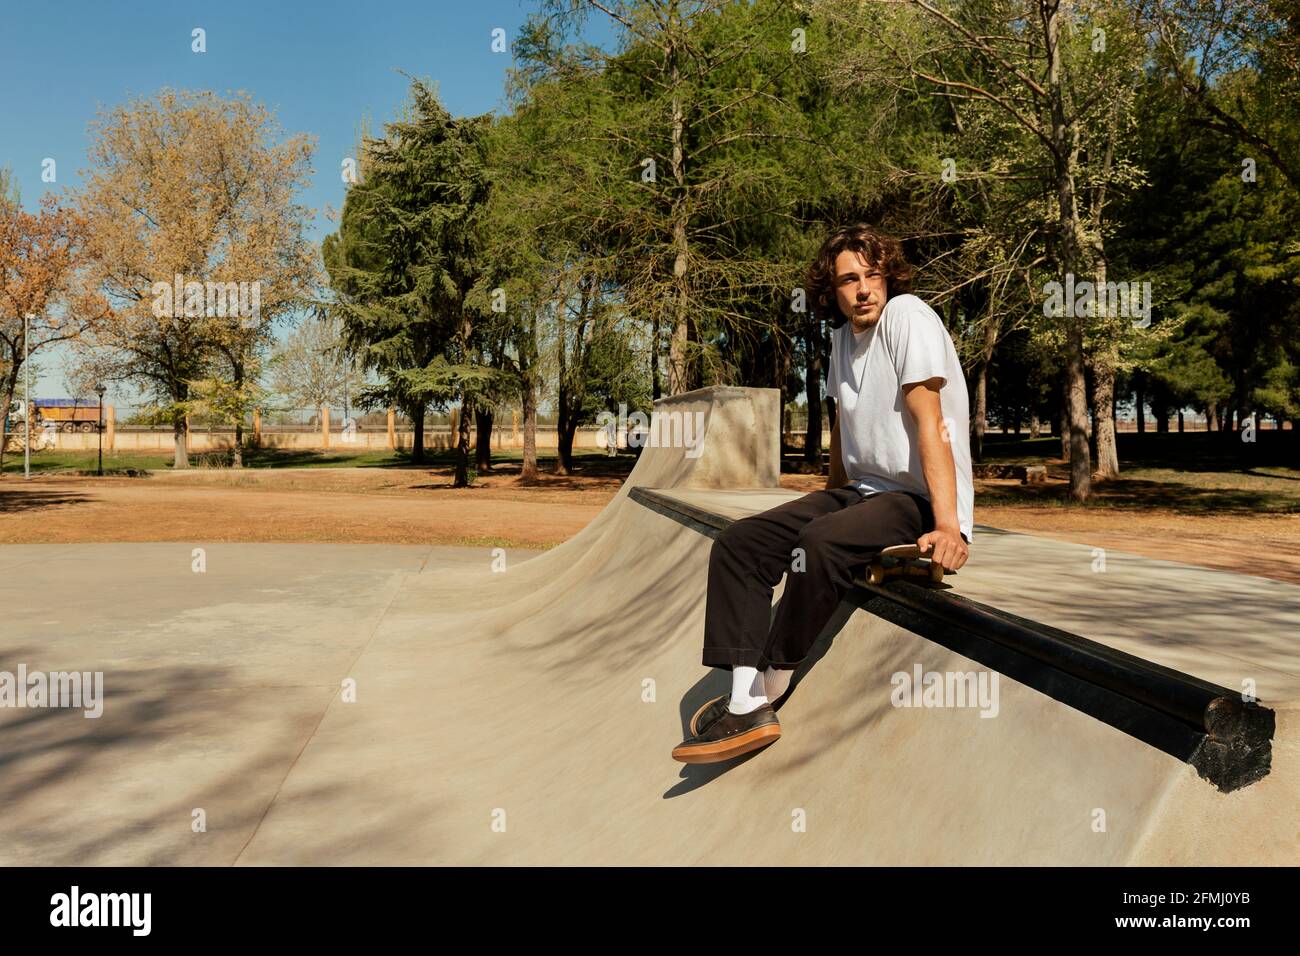 Junger Mann, der auf dem Skateboard sitzt, um sich auszuruhen Stockfoto